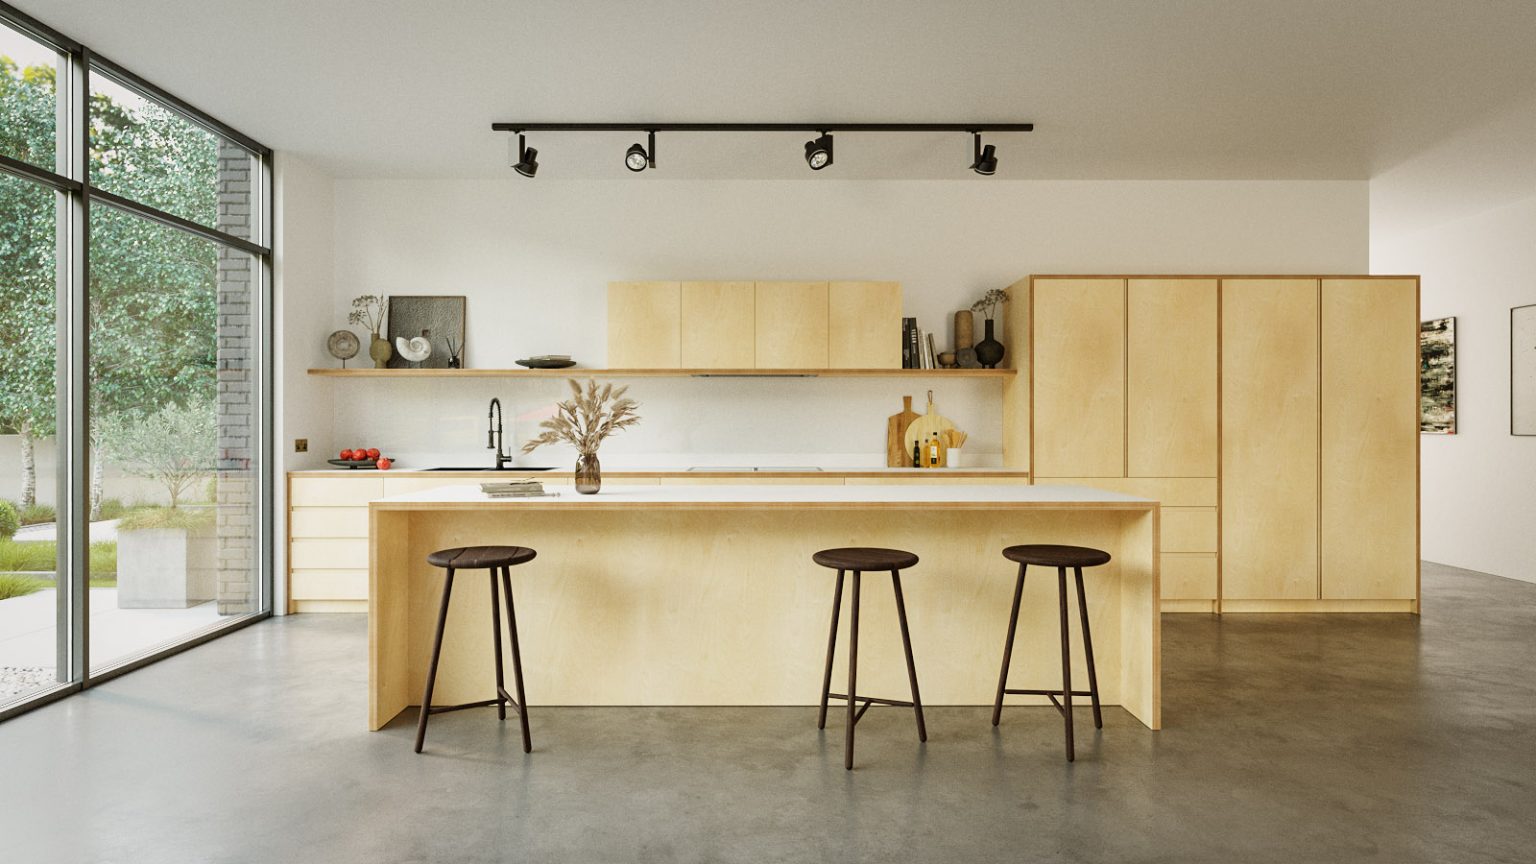 plywood kitchen design nz